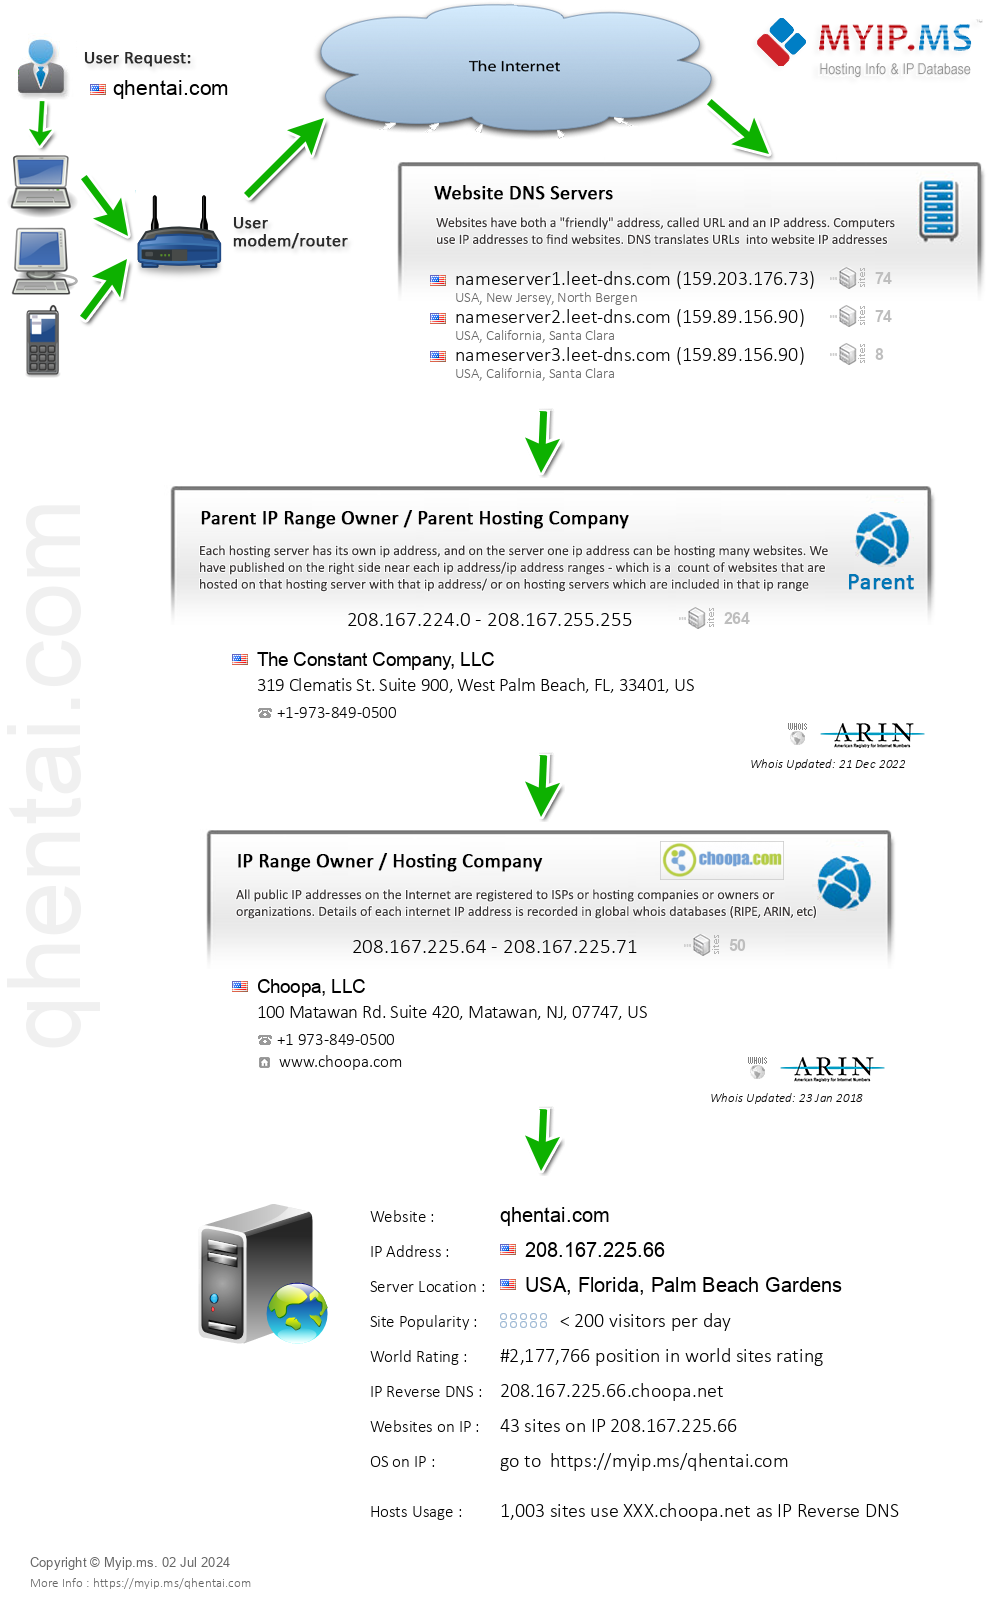 Qhentai.com - Website Hosting Visual IP Diagram